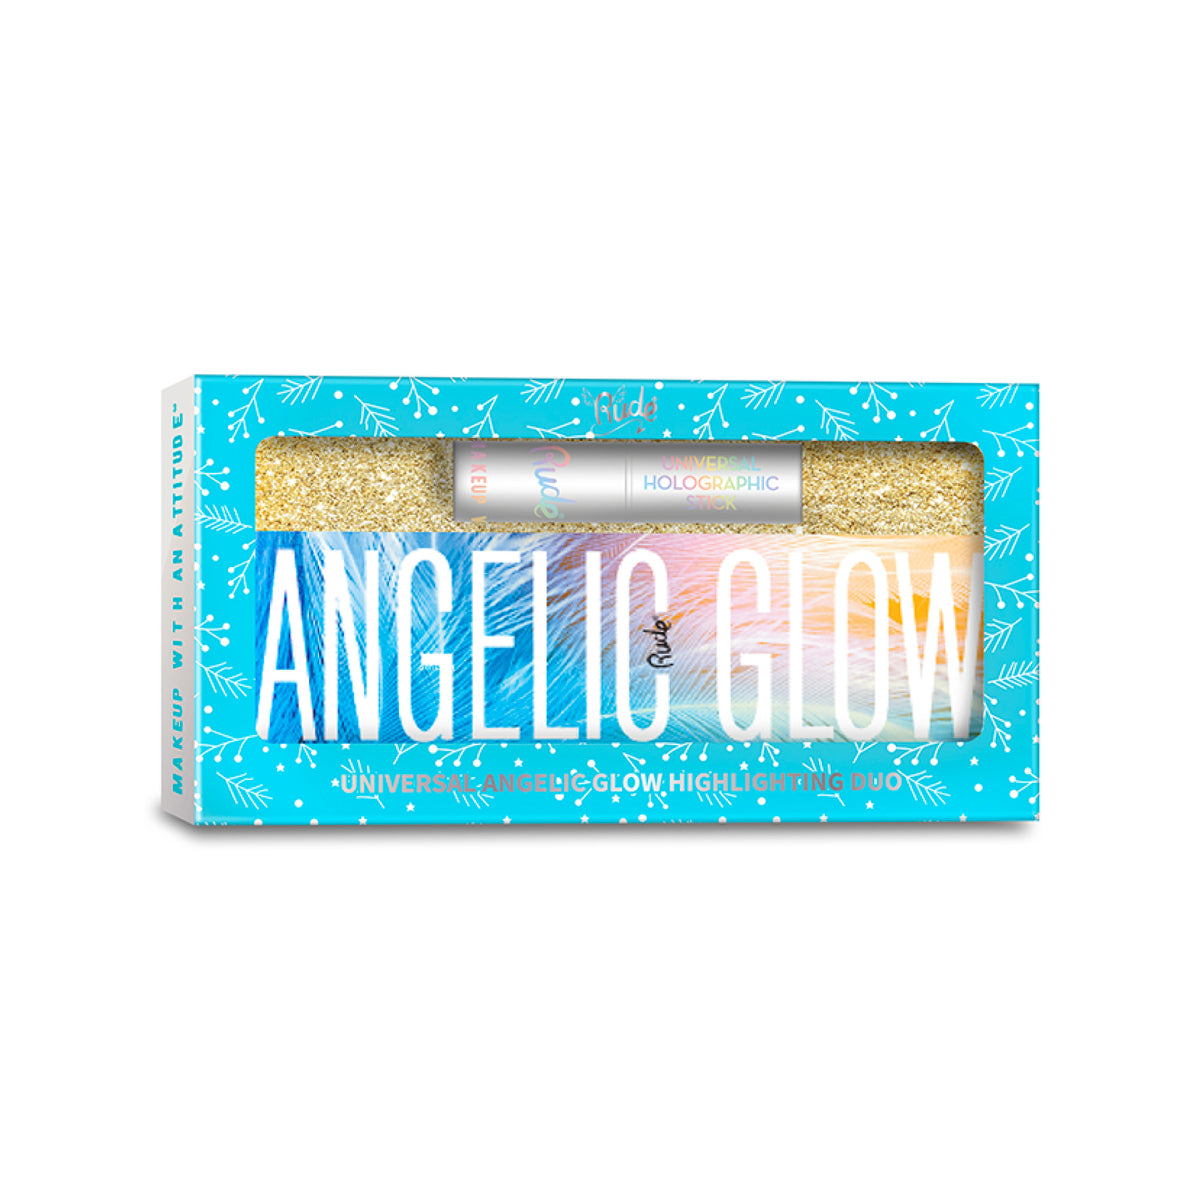 Universal Angelic Glow Highlighting Duo Gift Set